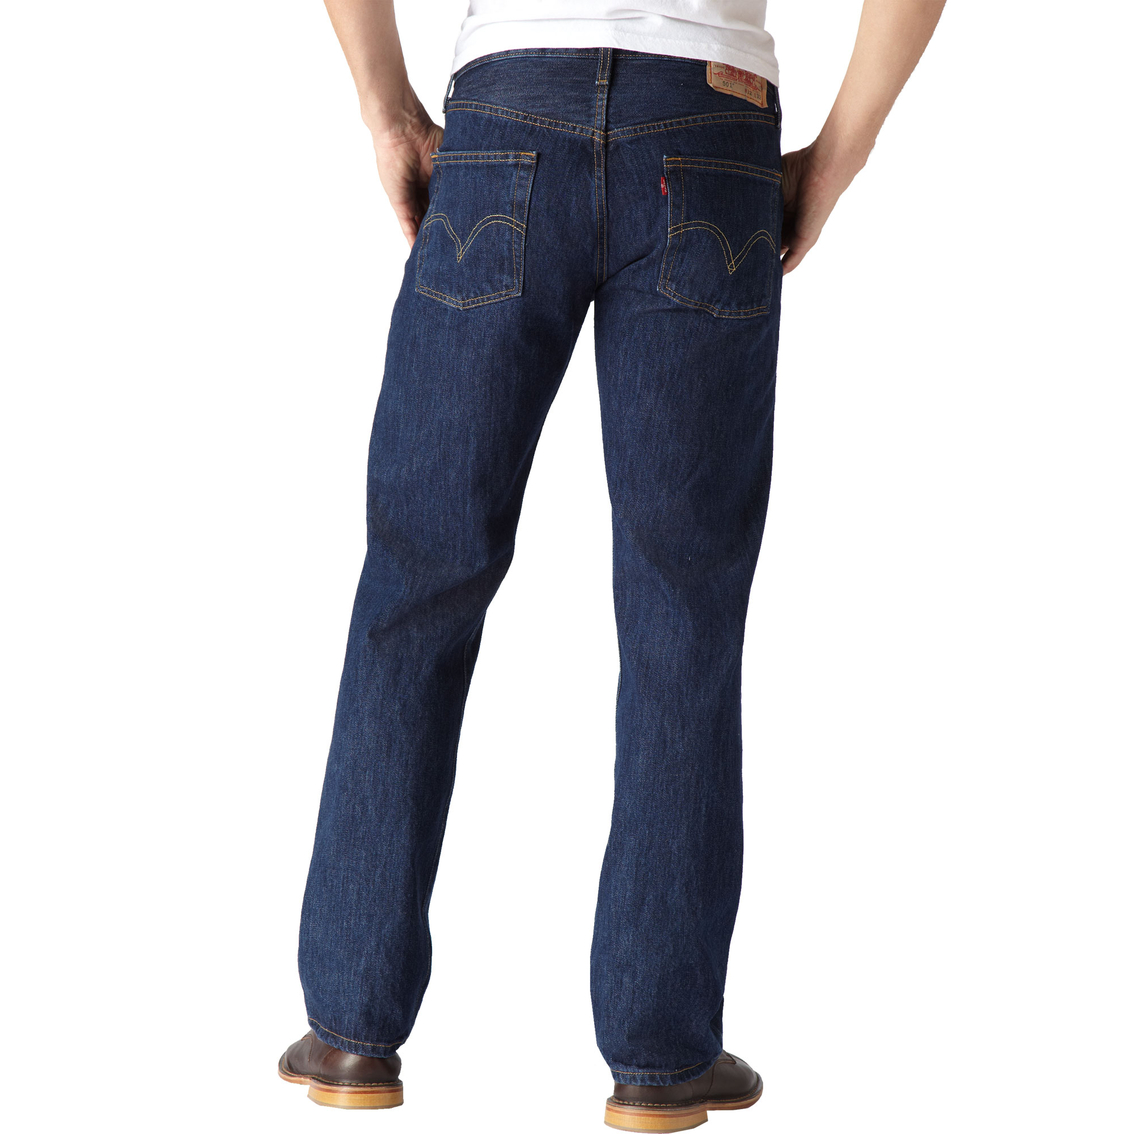 Levi's 501 5 Pocket Original Fit Jeans | Jeans | Clothing & Accessories ...